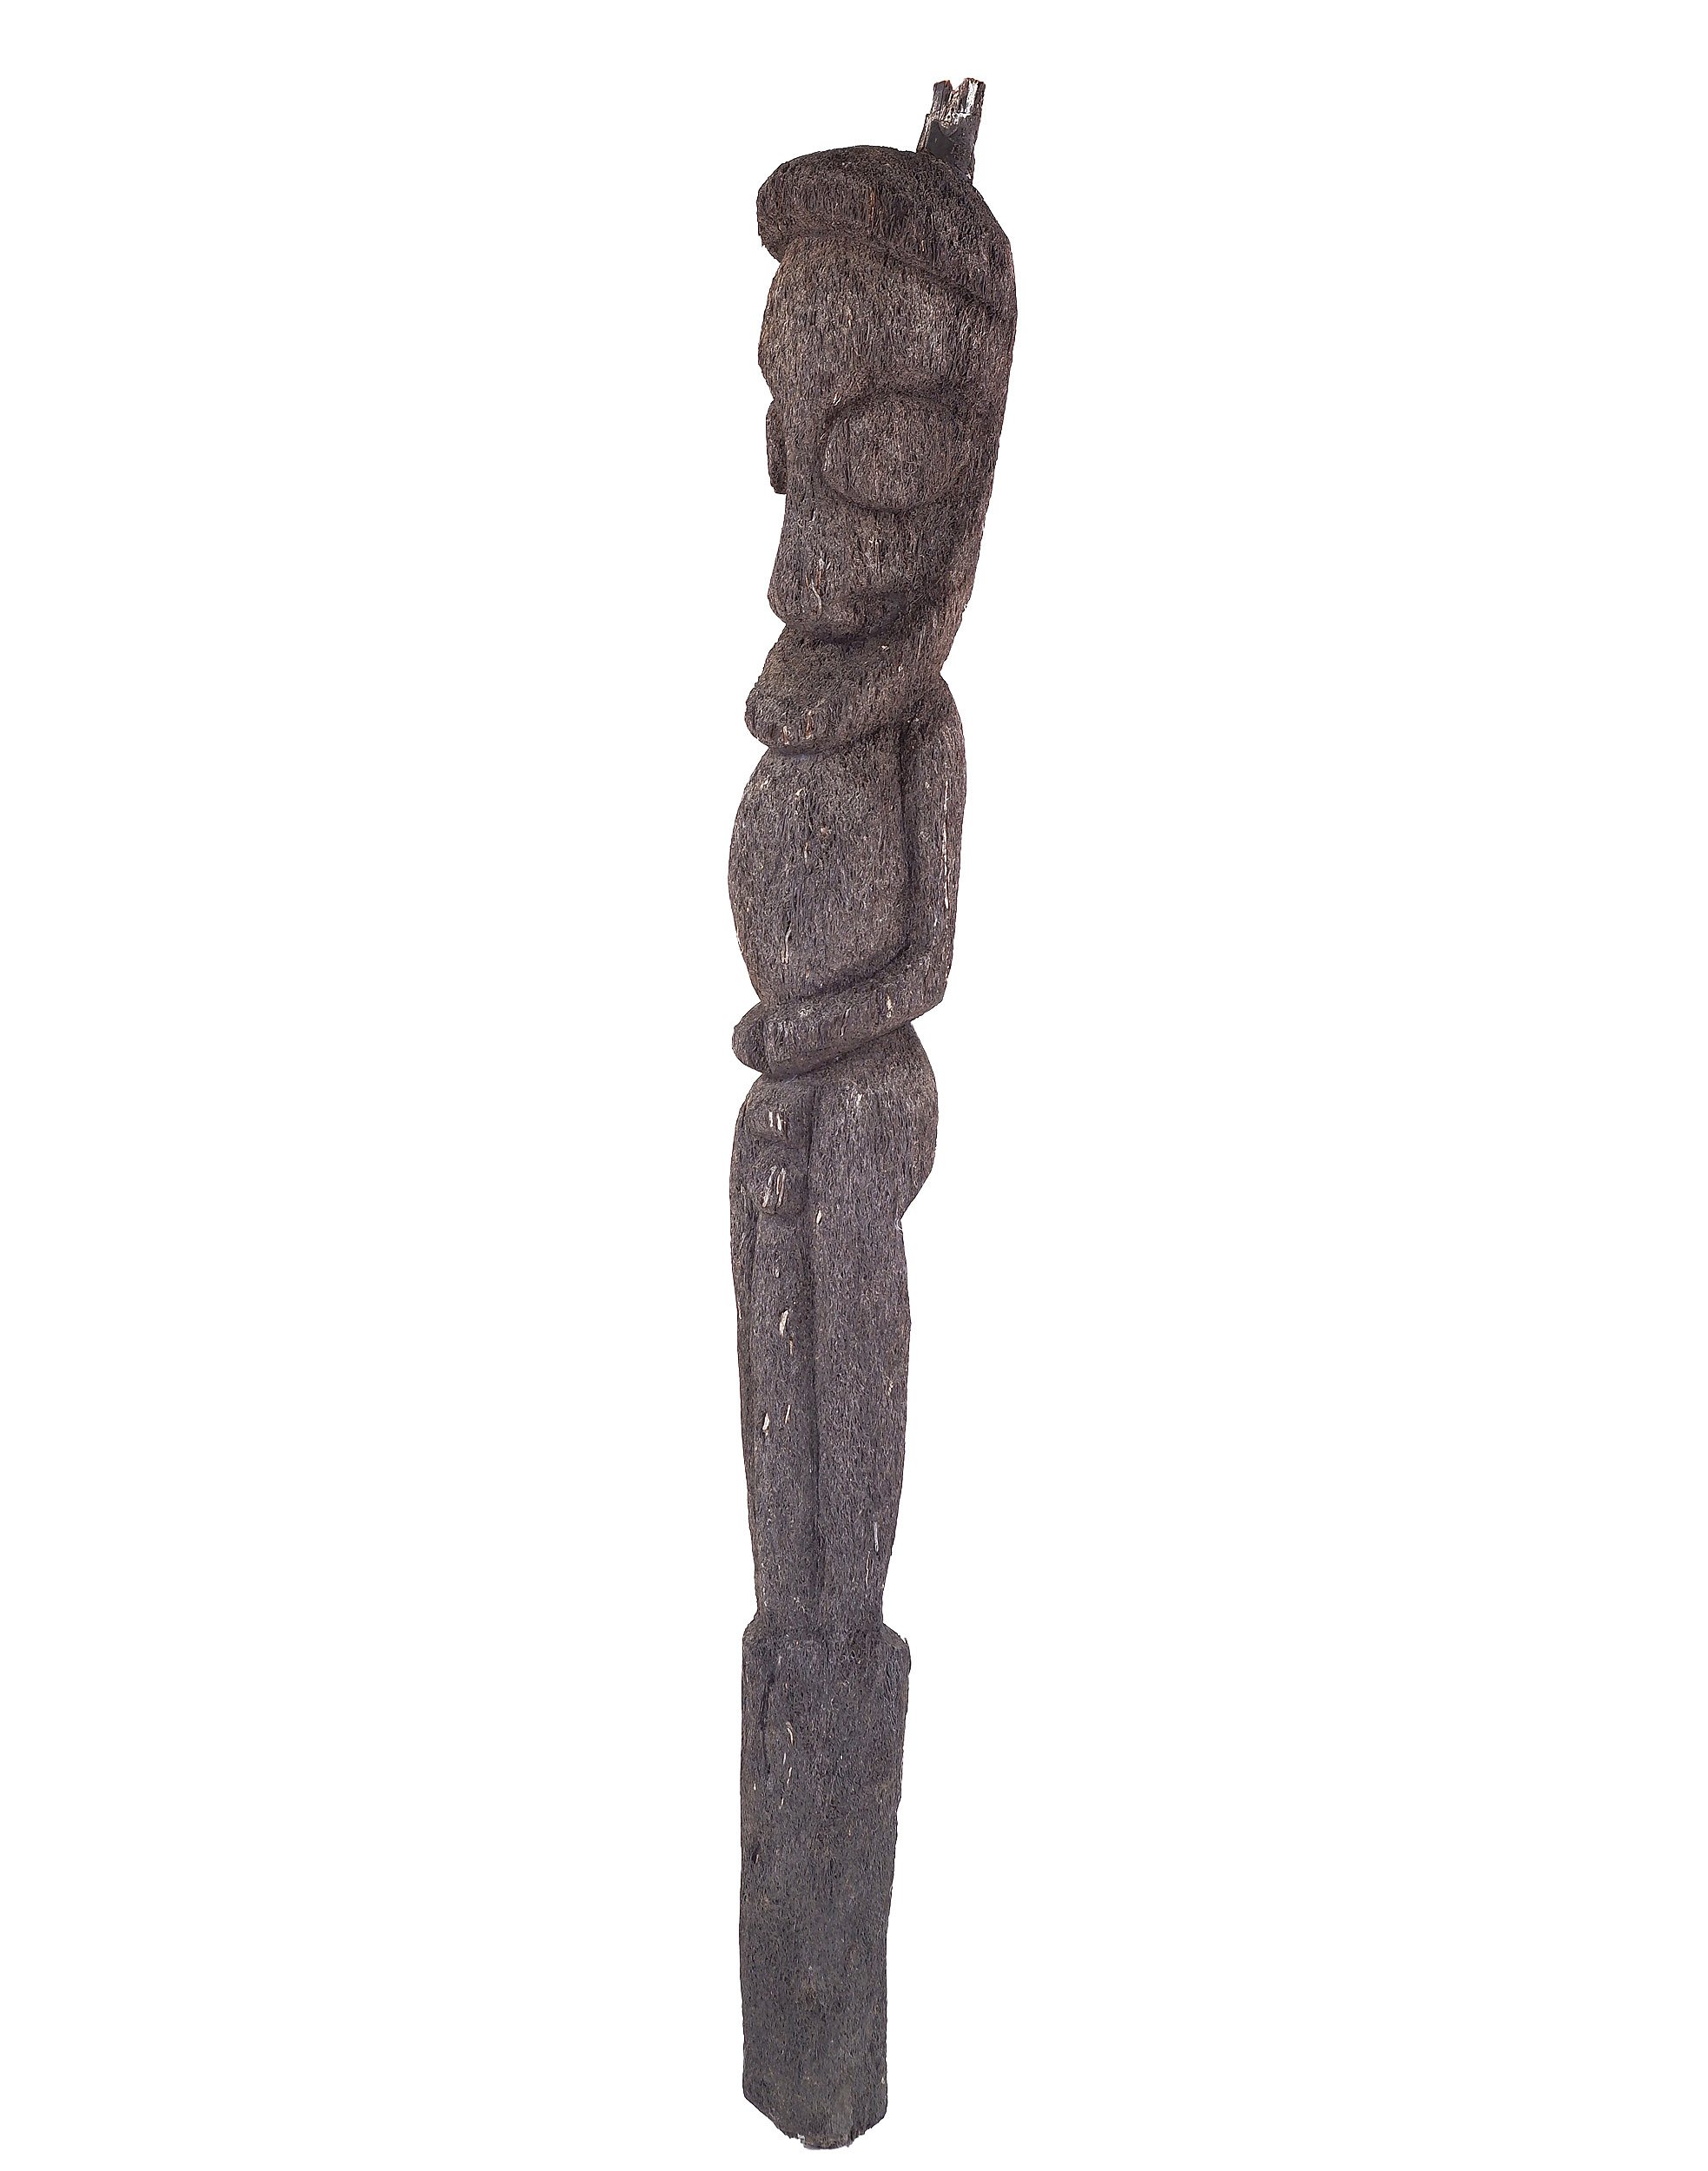 'Ambrym Island Vanuatu Carved Fernwood Figure'